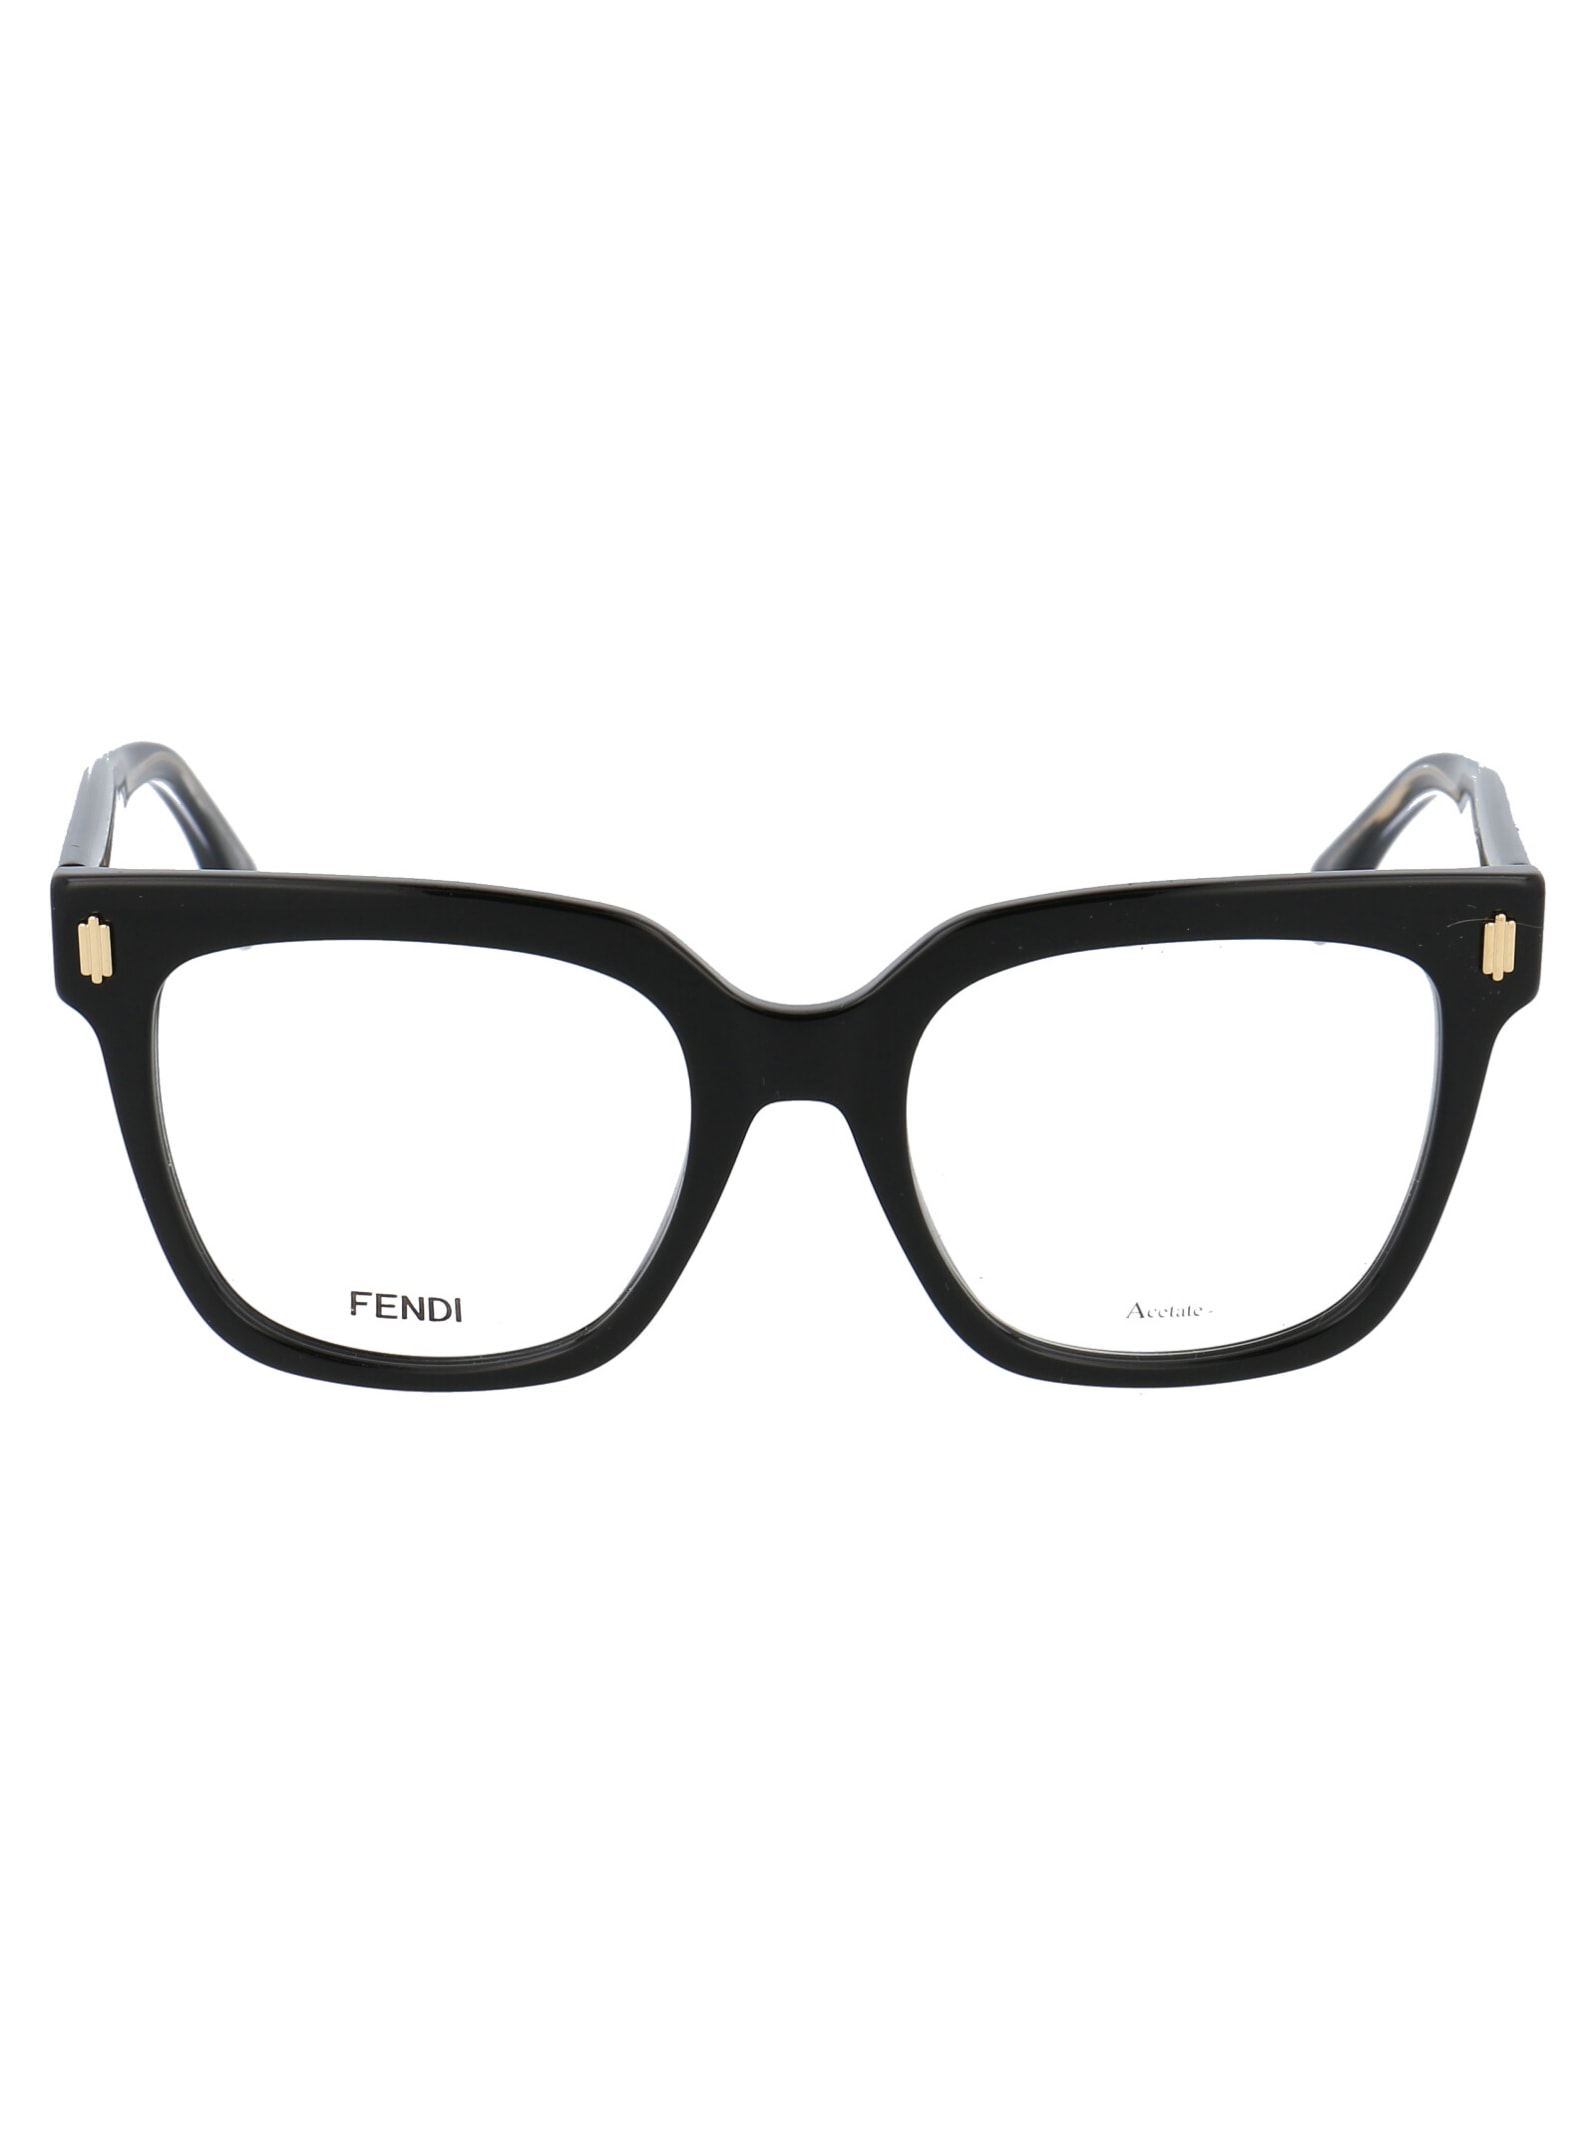 Fendi Ff 0463 Glasses In 807 Black